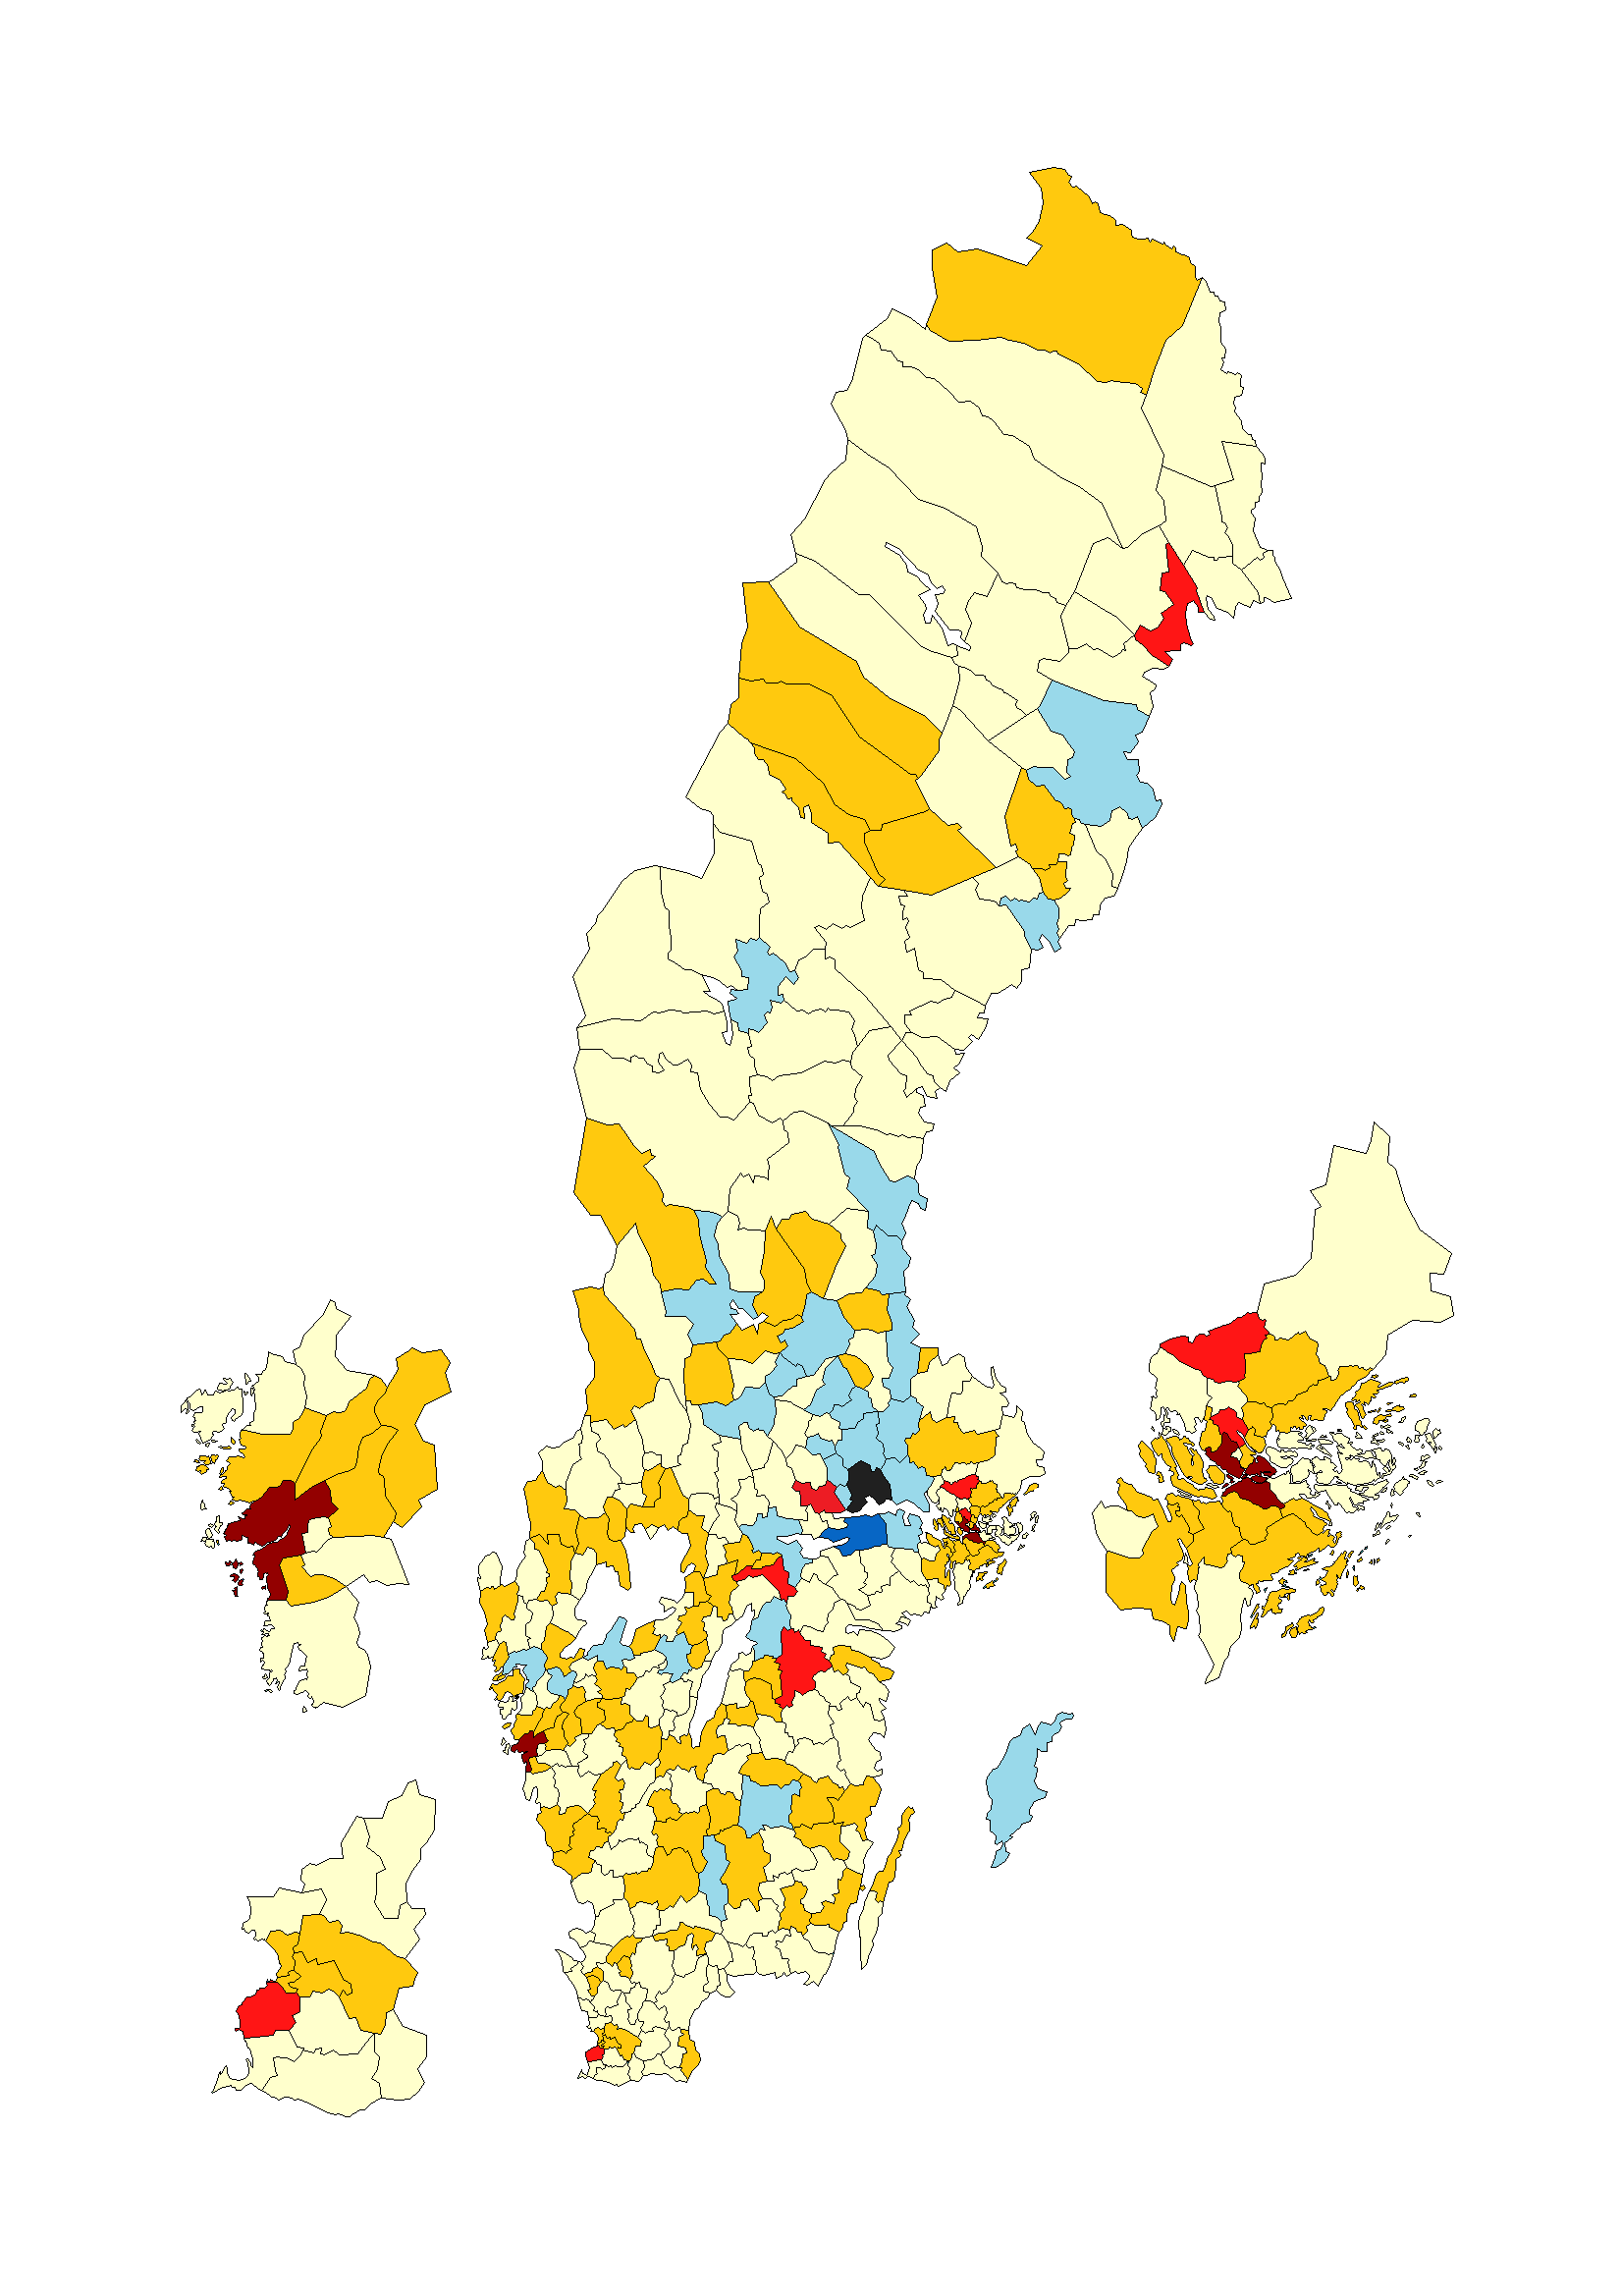 Figur 12 Västerås flyttnetto mot övriga kommuner i Sverige (indelat efter storleken på flyttnettot), år 2013 (Blå = Flyttvinst över 10 resp